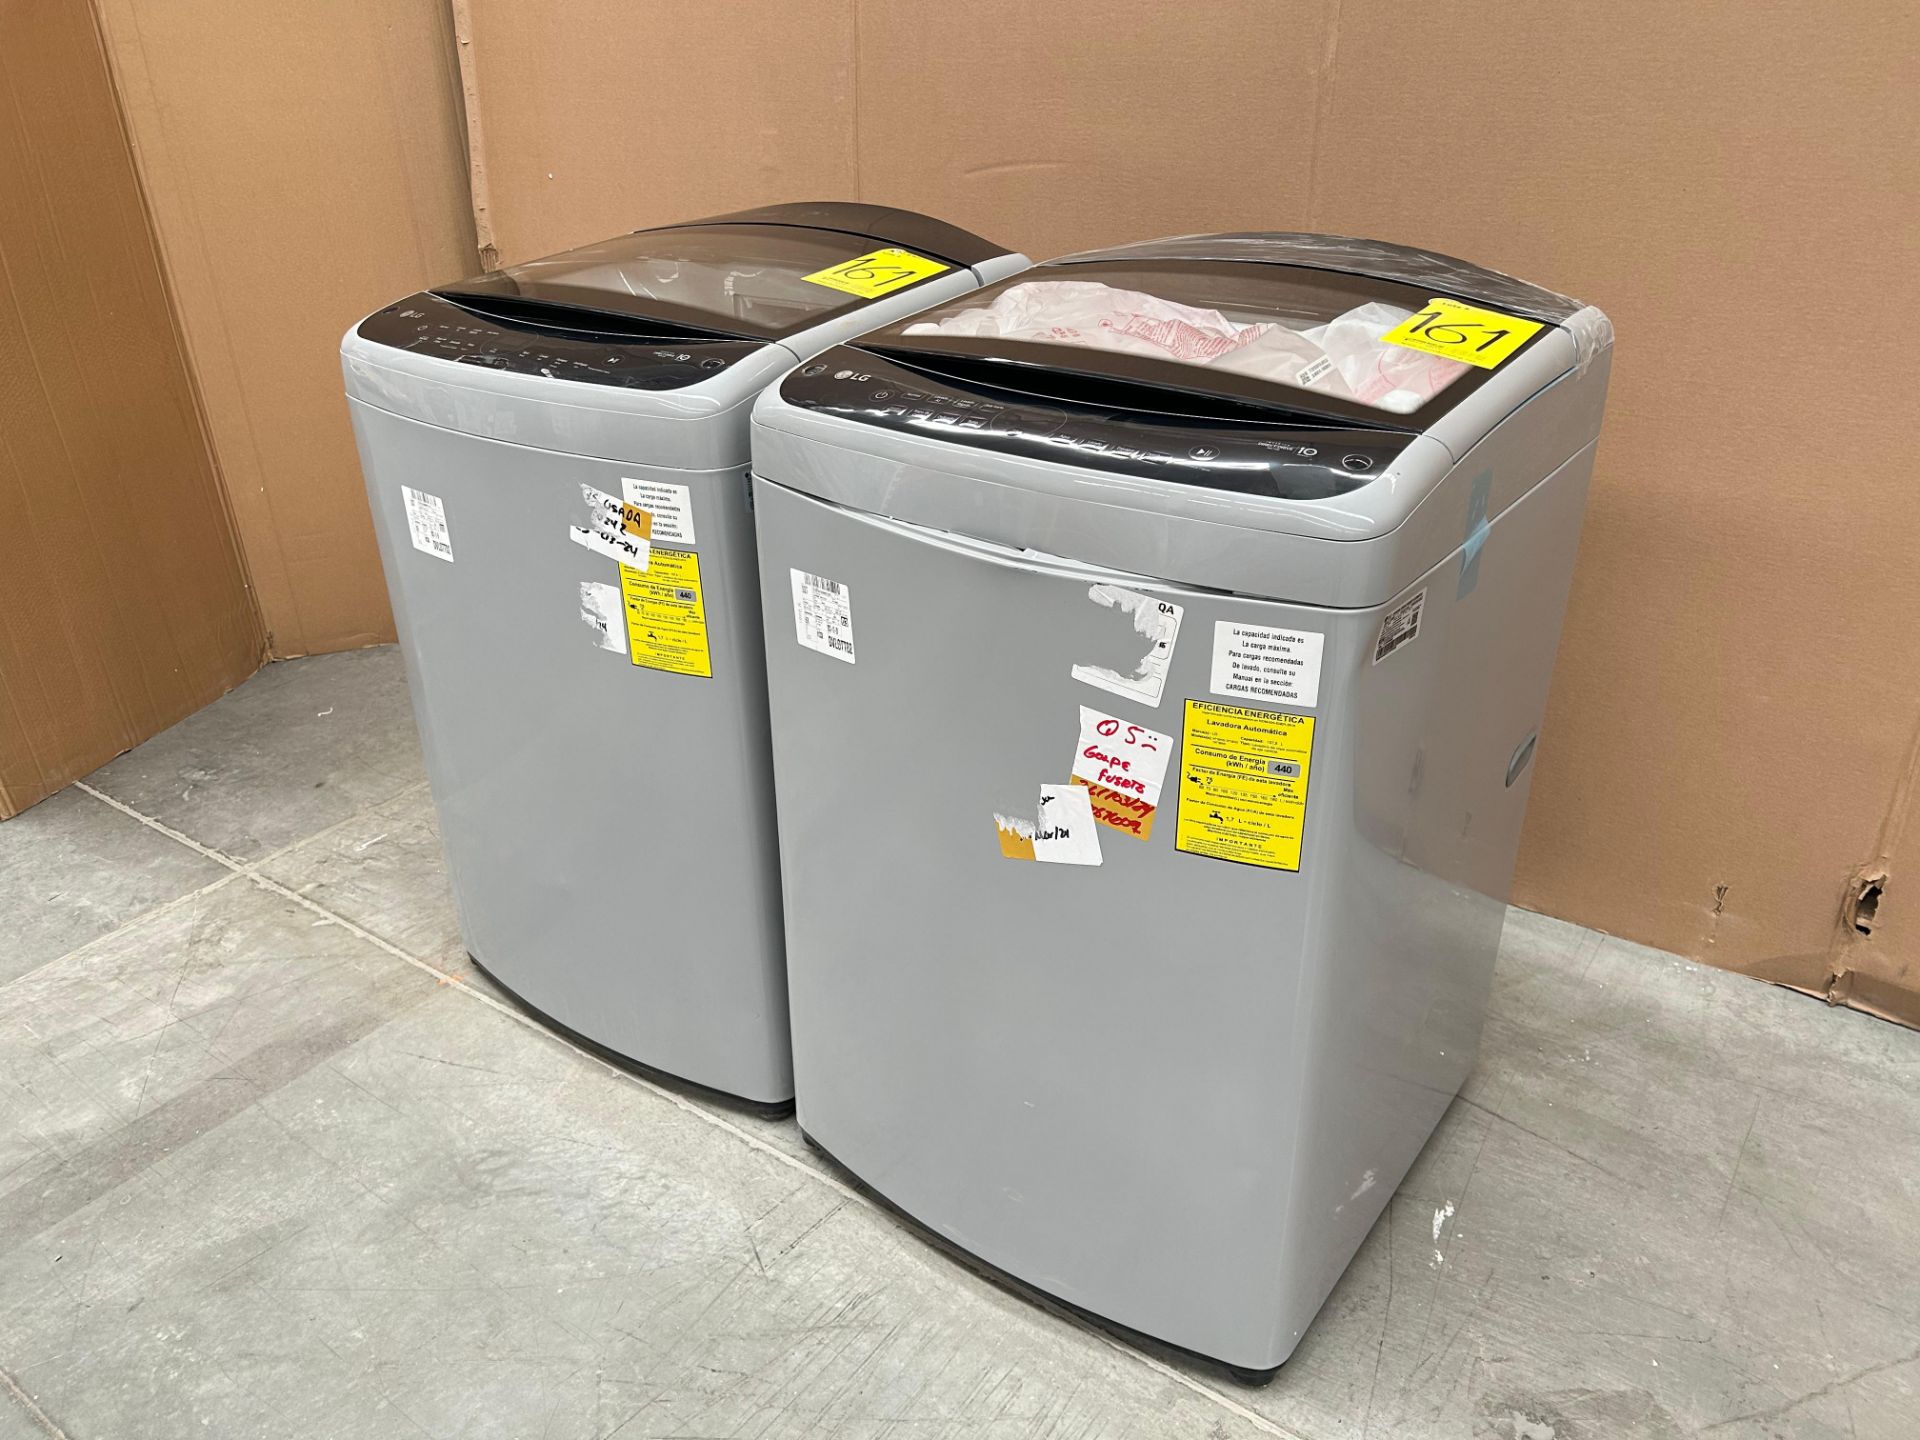 Lote de 2 lavadoras contiene: 1 Lavadora de 18 KG Marca LG, Modelo WT18DV6, Serie 4B032, Color GRIS - Image 2 of 6